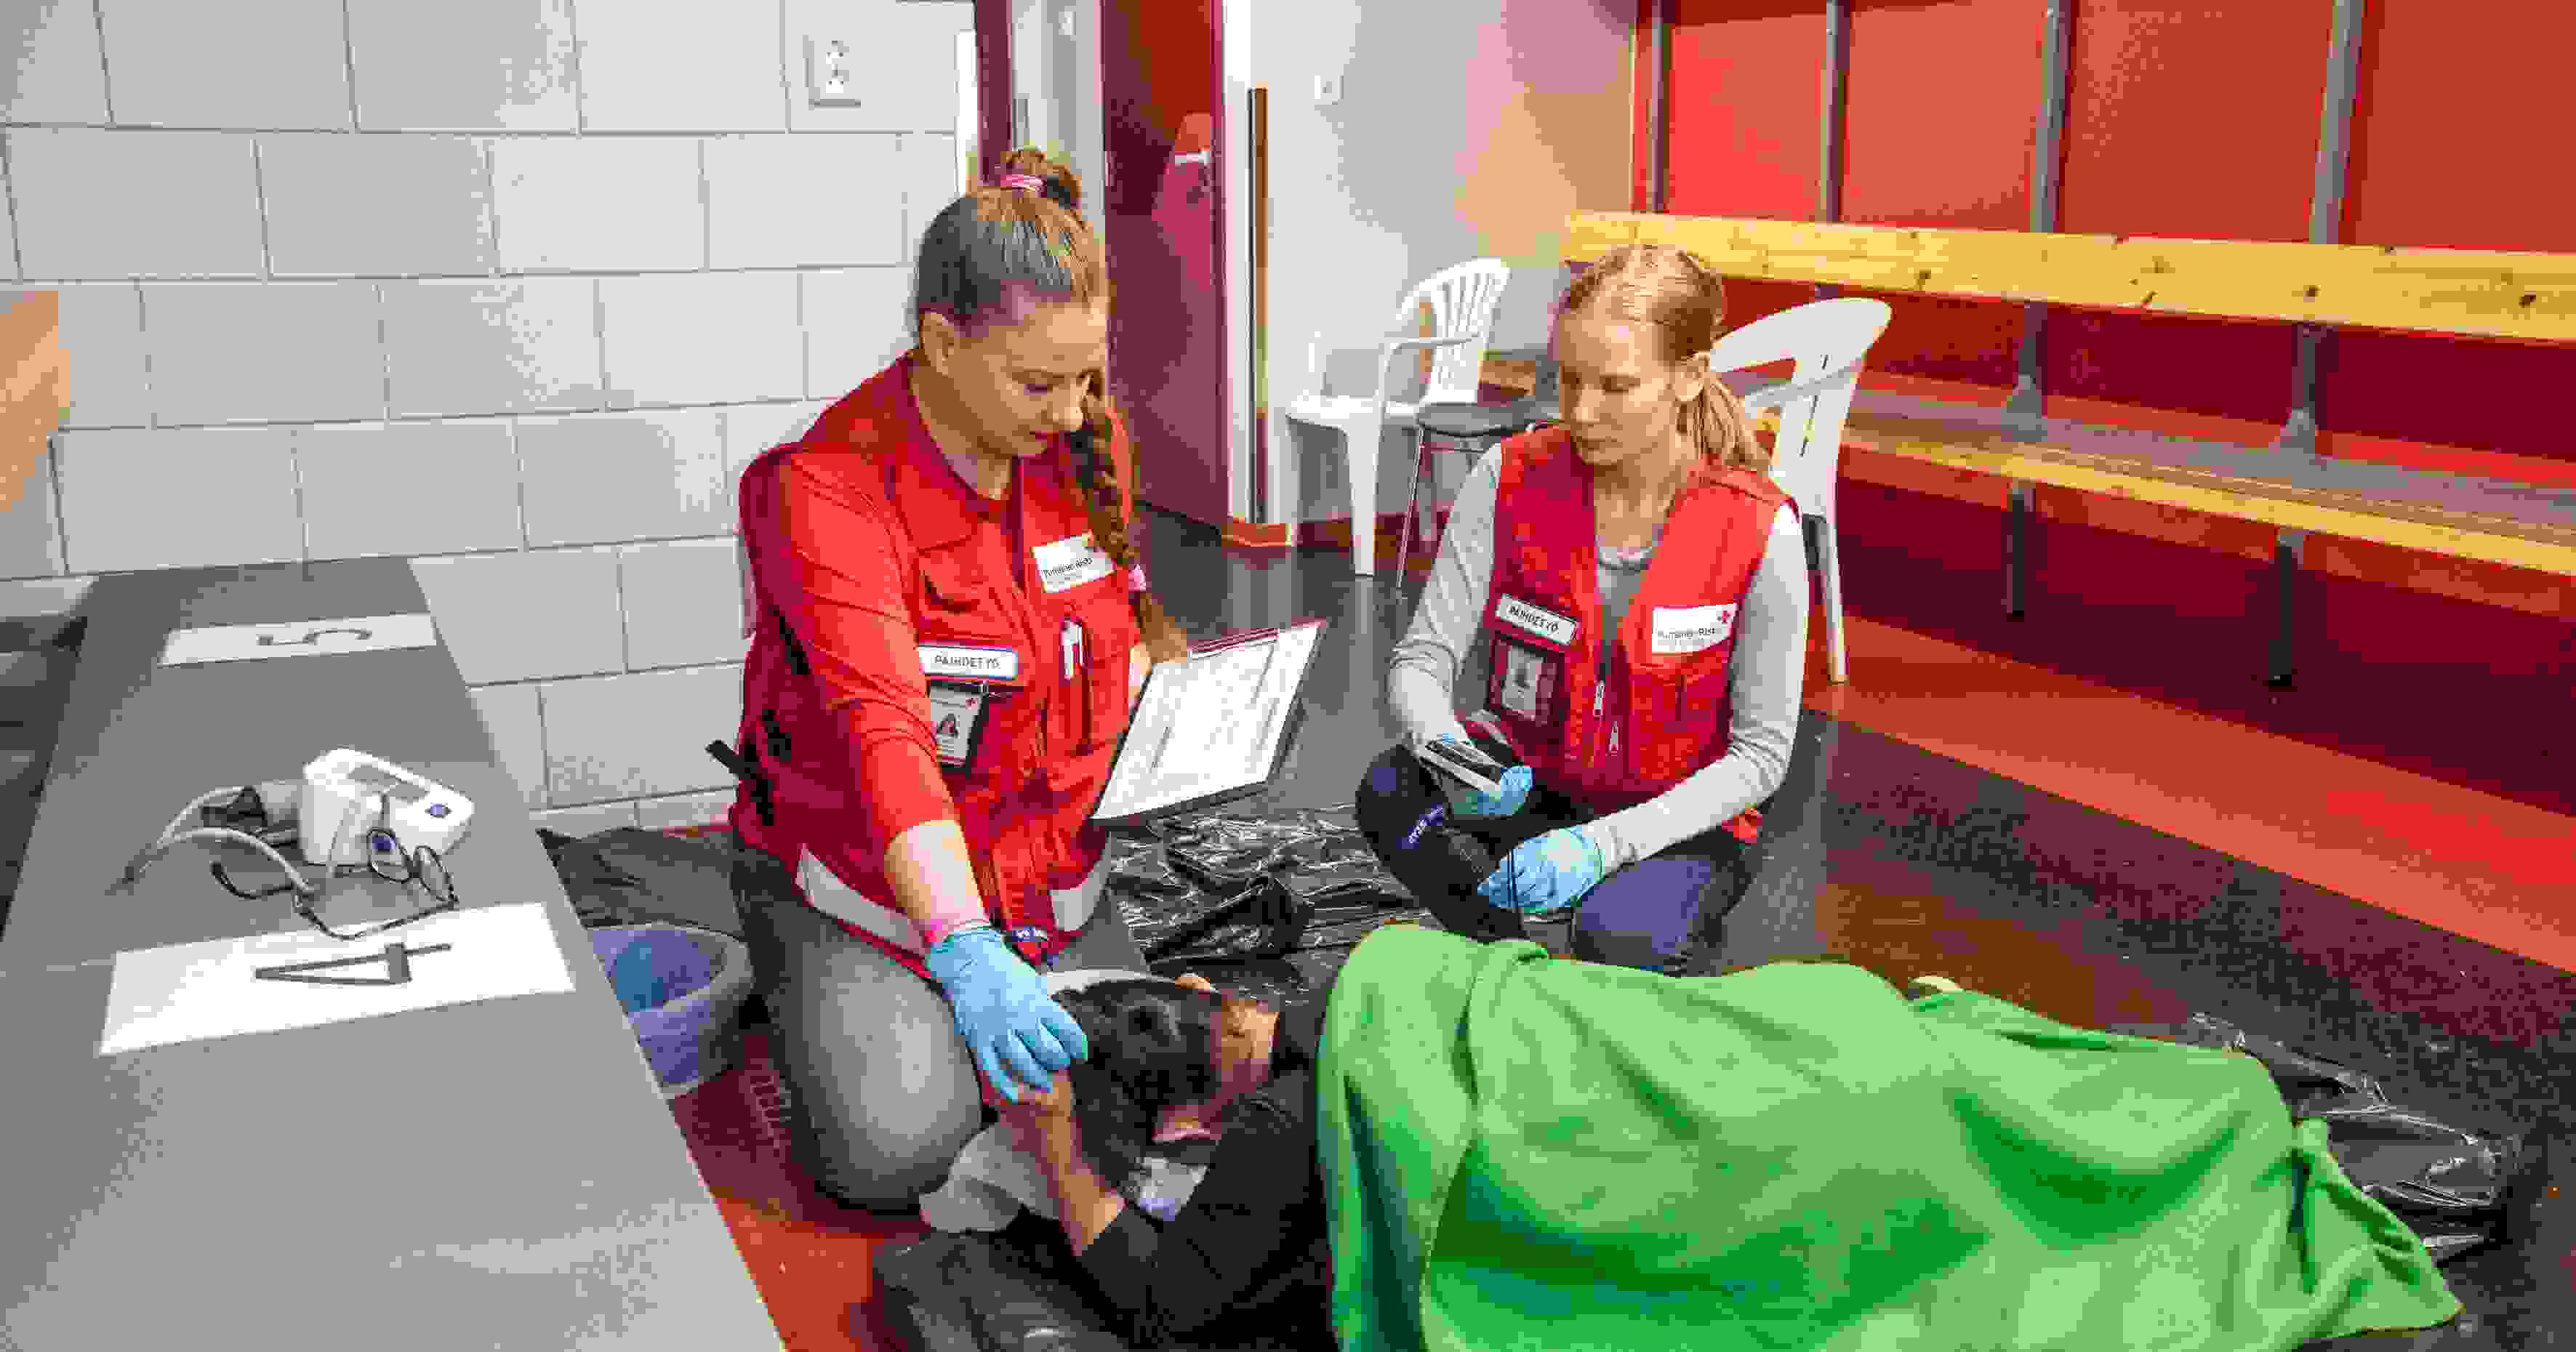 Kuvituskuva Punaisen Ristin tapahtumapäivystyksen selviämispisteestä. Kaksi punaisiin päivystysliiveihin pukeutunutta vapaaehtoista seuraa lattialla lepäävän henkilön vointia.